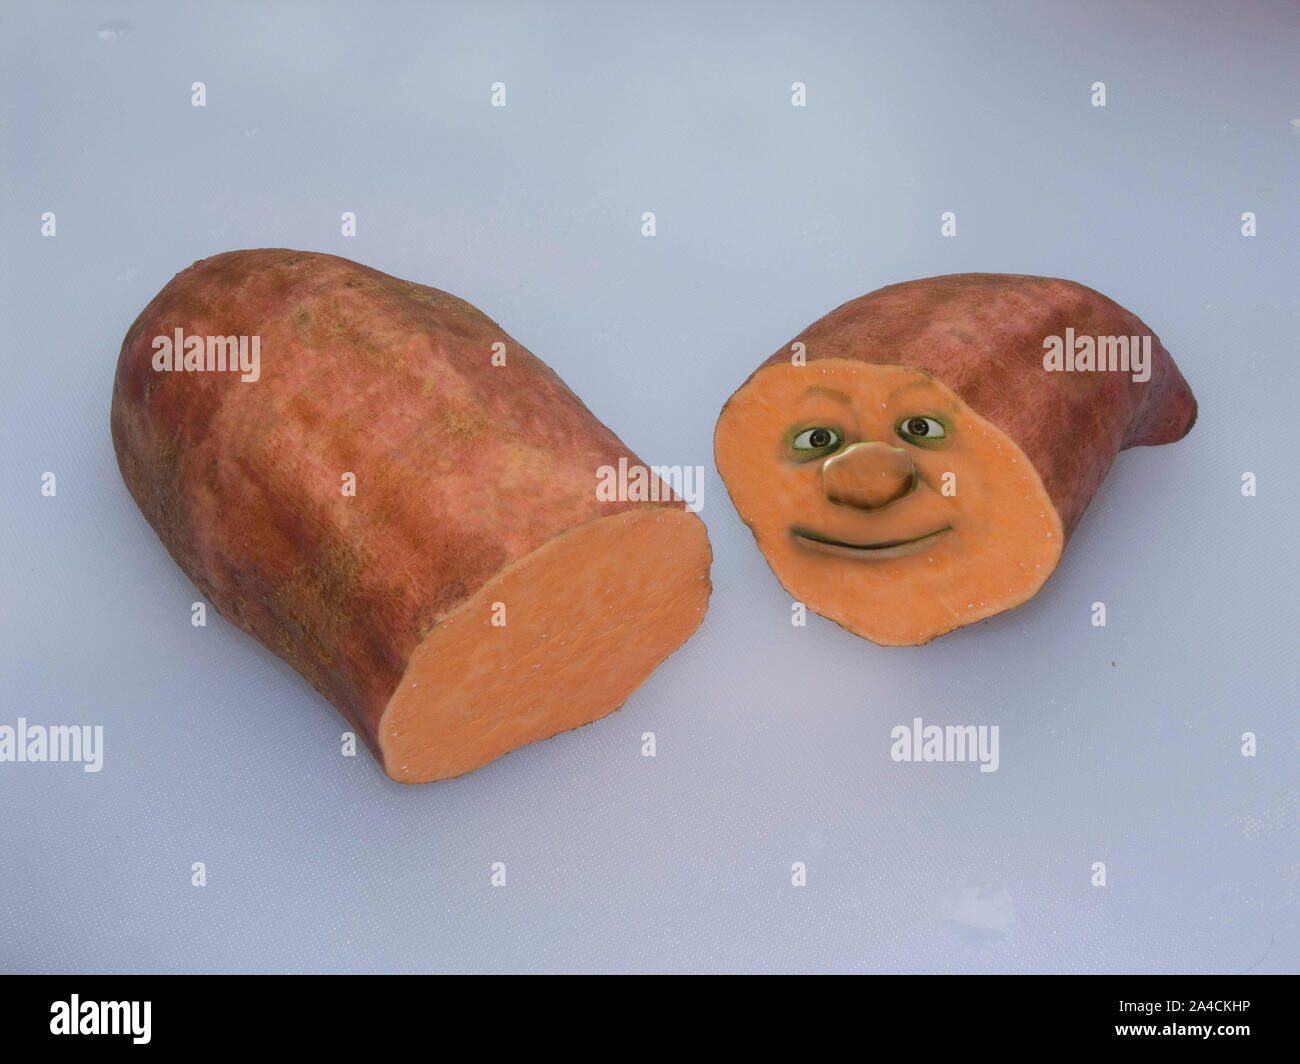 I segmenti di taglio orange patata dolce con faccia sorridente sul pezzo su sfondo chiaro Foto Stock